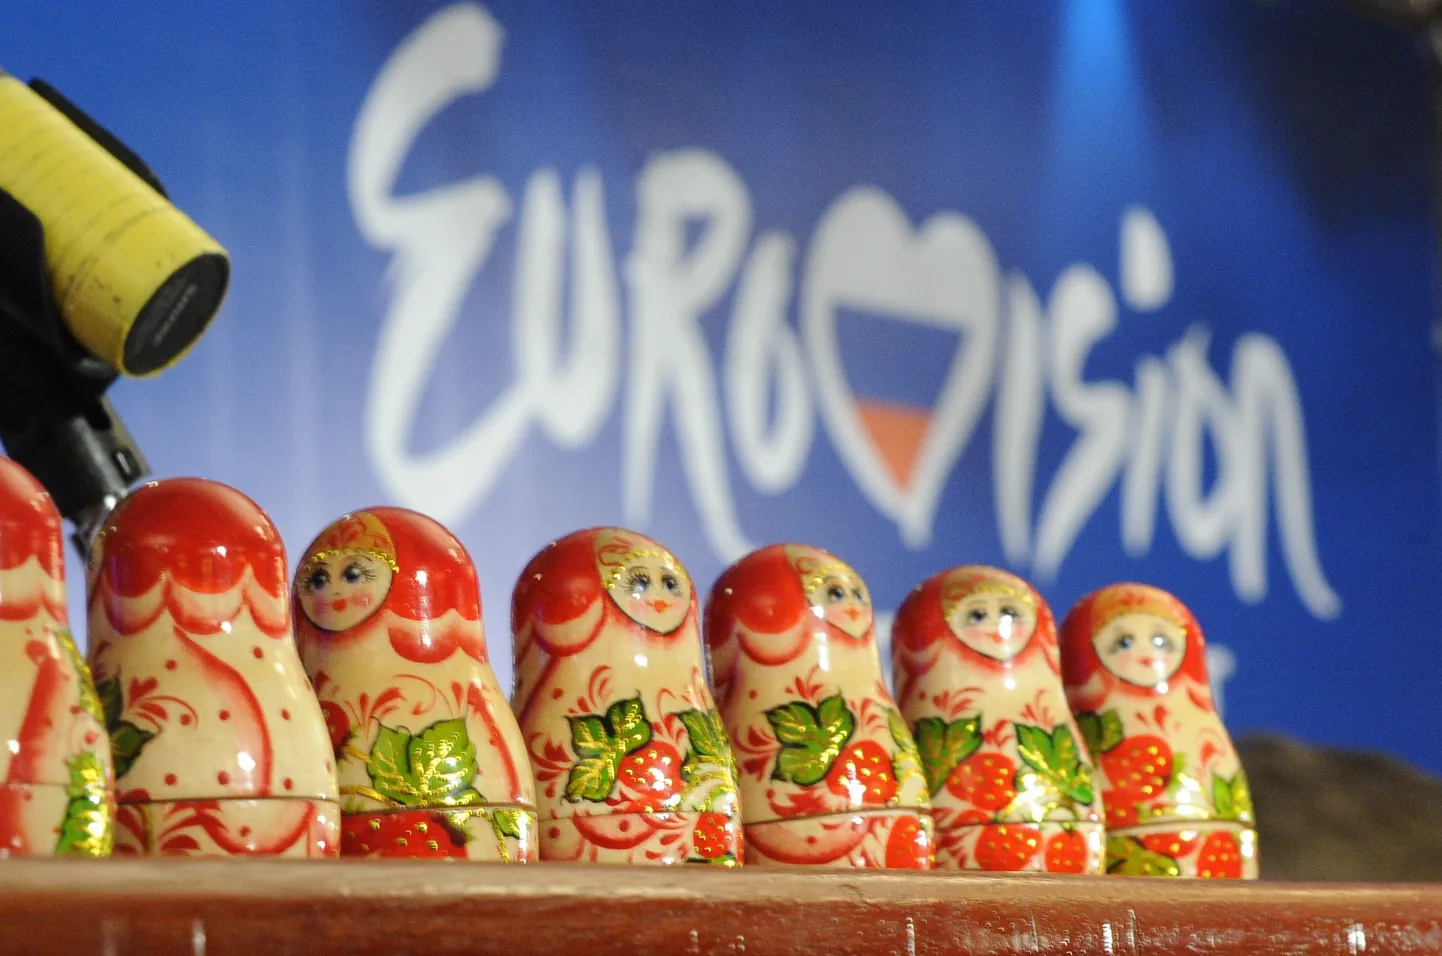 Matrjoškad Eurovisiooni logo ees